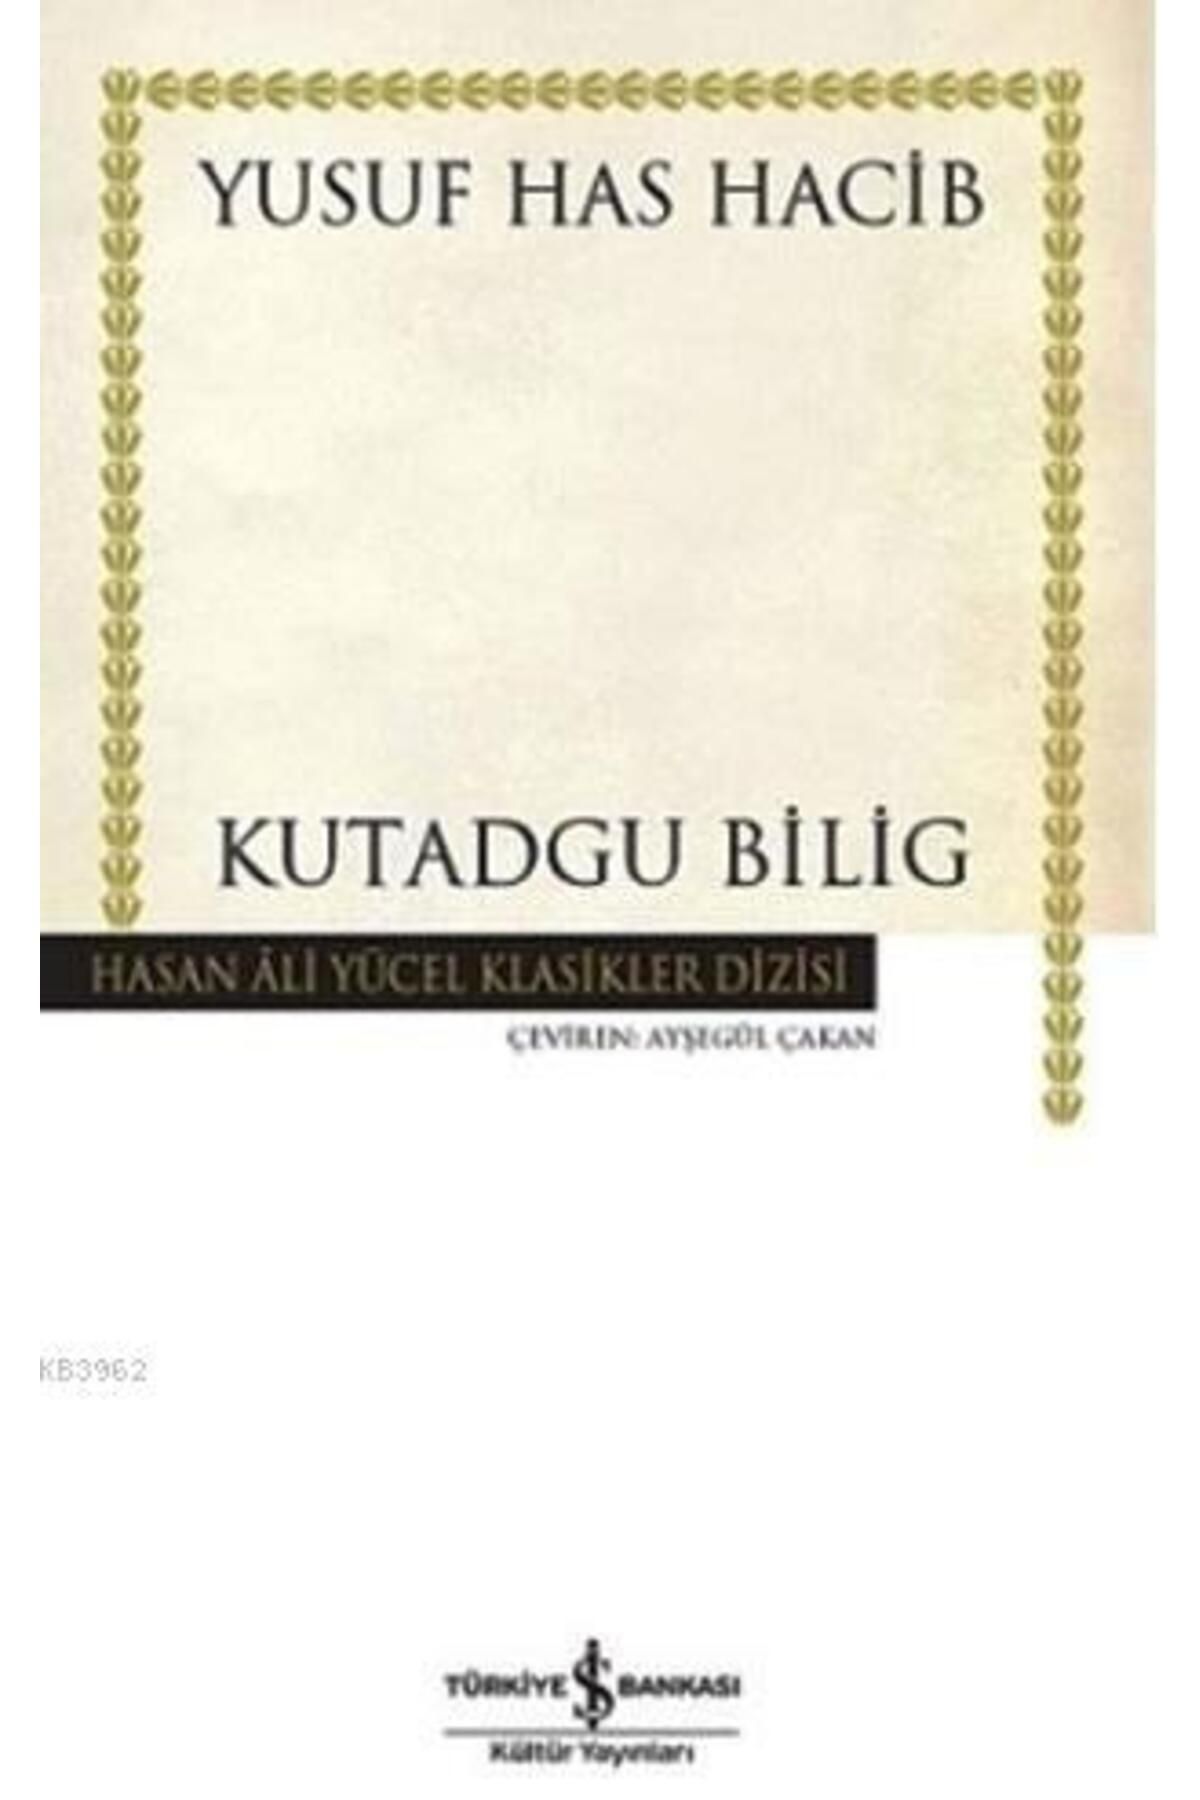 Türkiye İş Bankası Kültür Yayınları Kutadgu Bilig Yusuf Has Hacib İş Bankası Kültür Yayınları